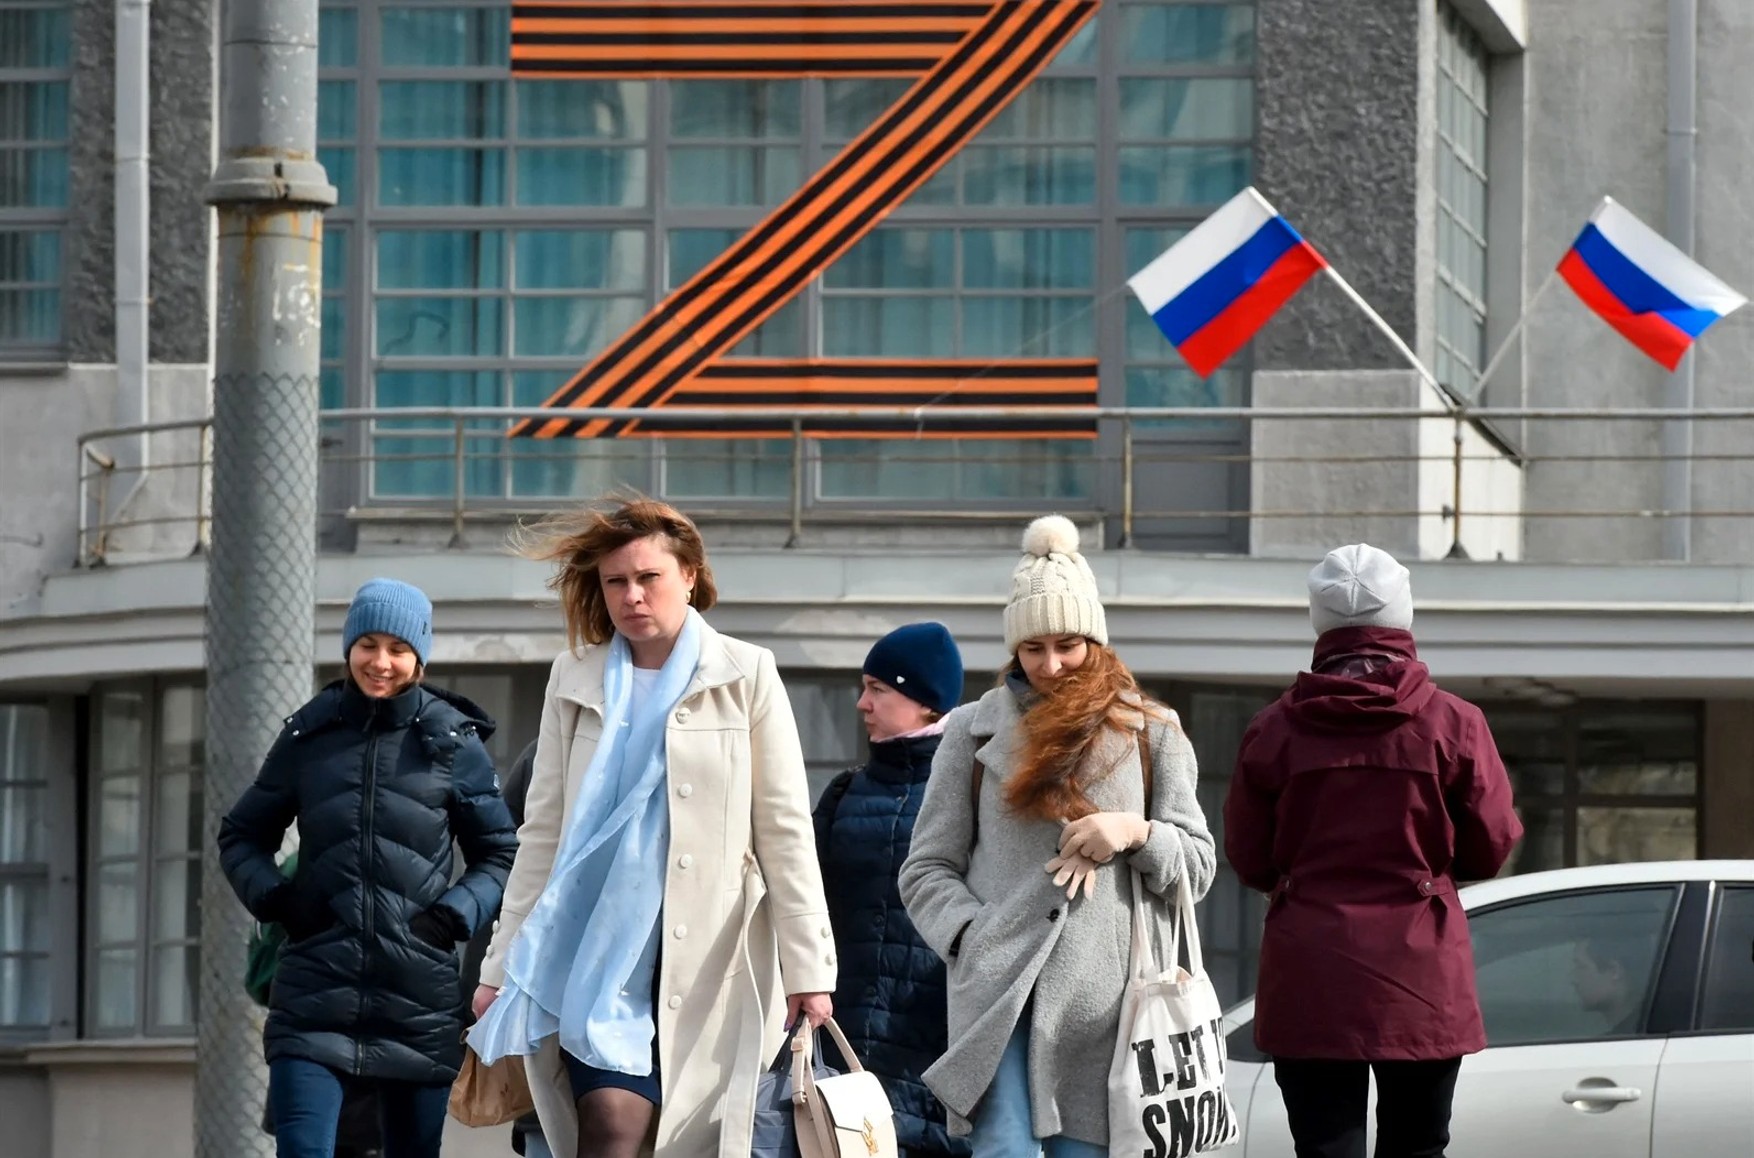 Литва запретила публичную демонстрацию георгиевской ленты и Z-символики